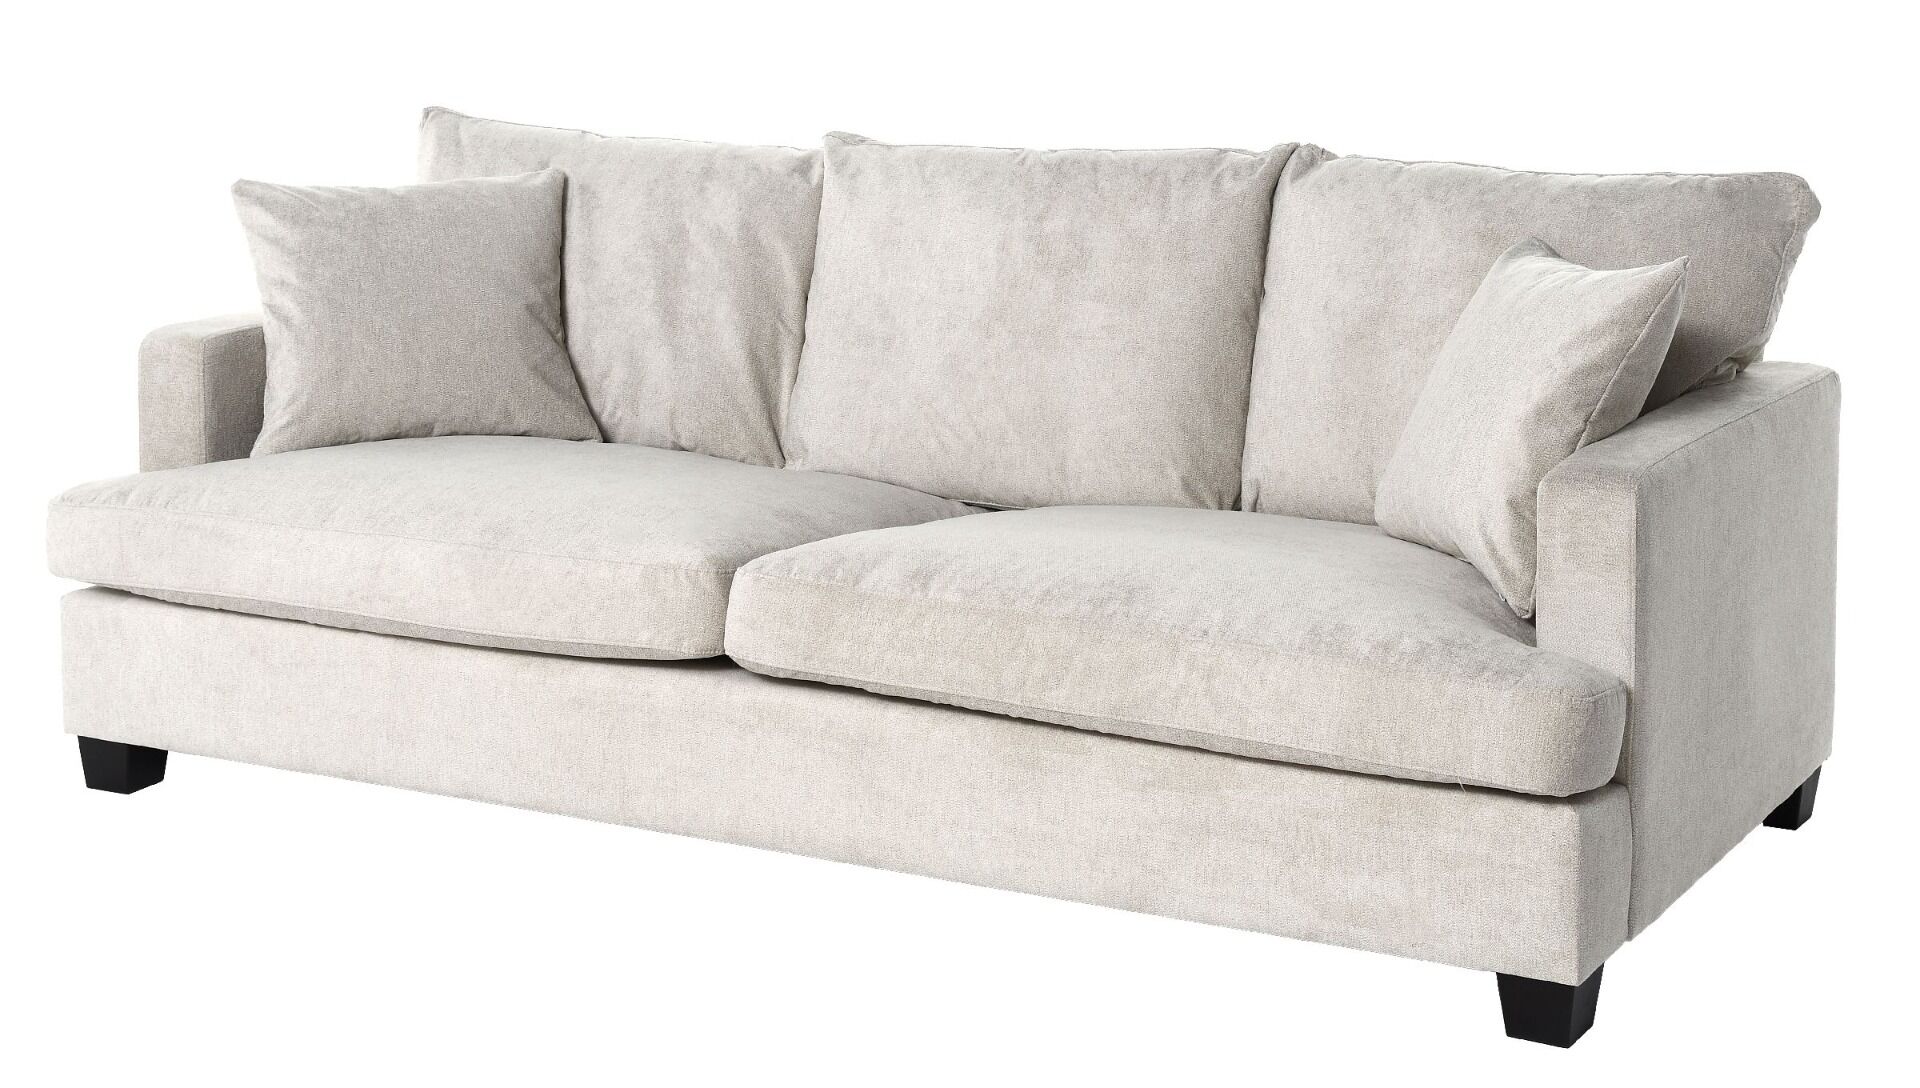 Sofa View 3-osobowa 215x102x88cm